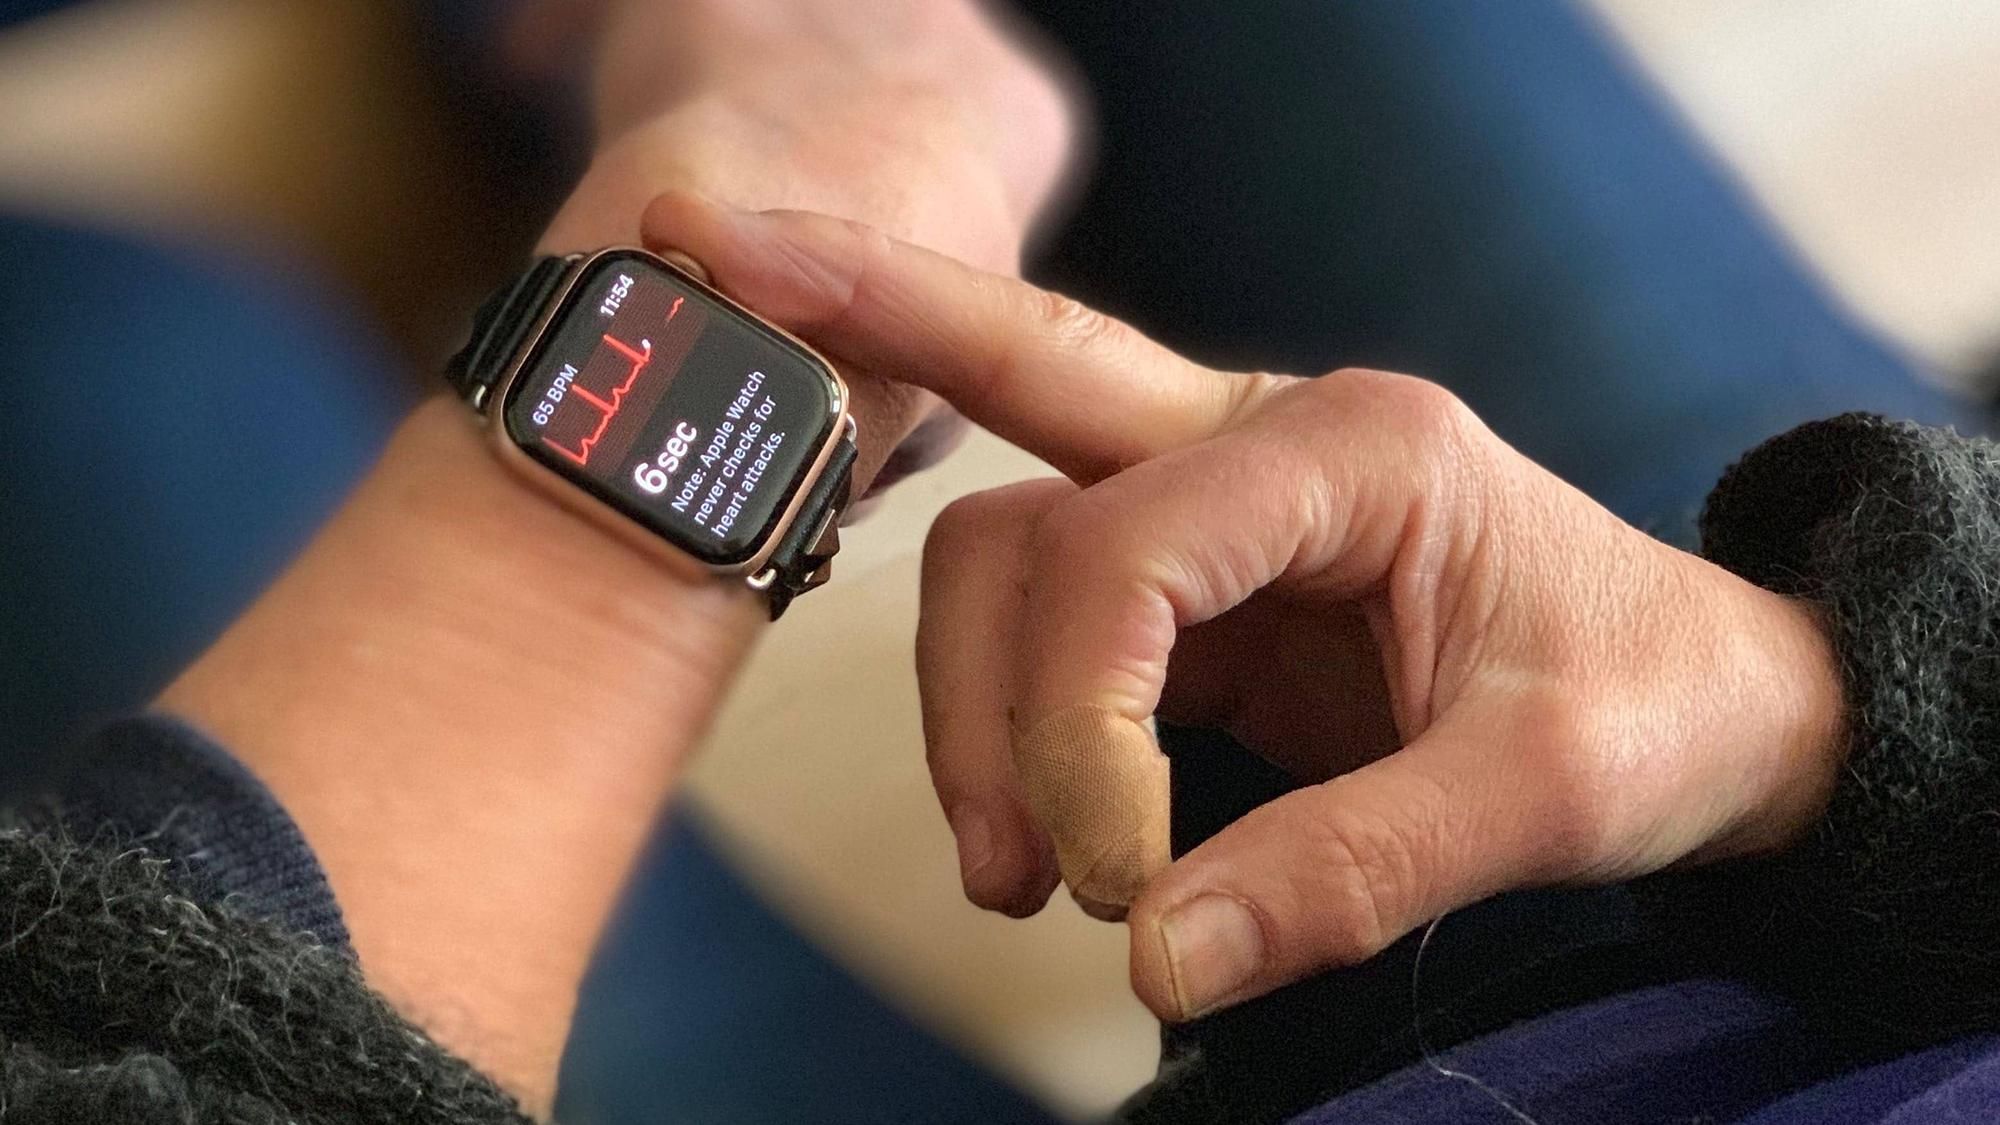 Не такие уж и полезные: врачи-кардиологи раскритиковали смарт-часы Apple Watch 4